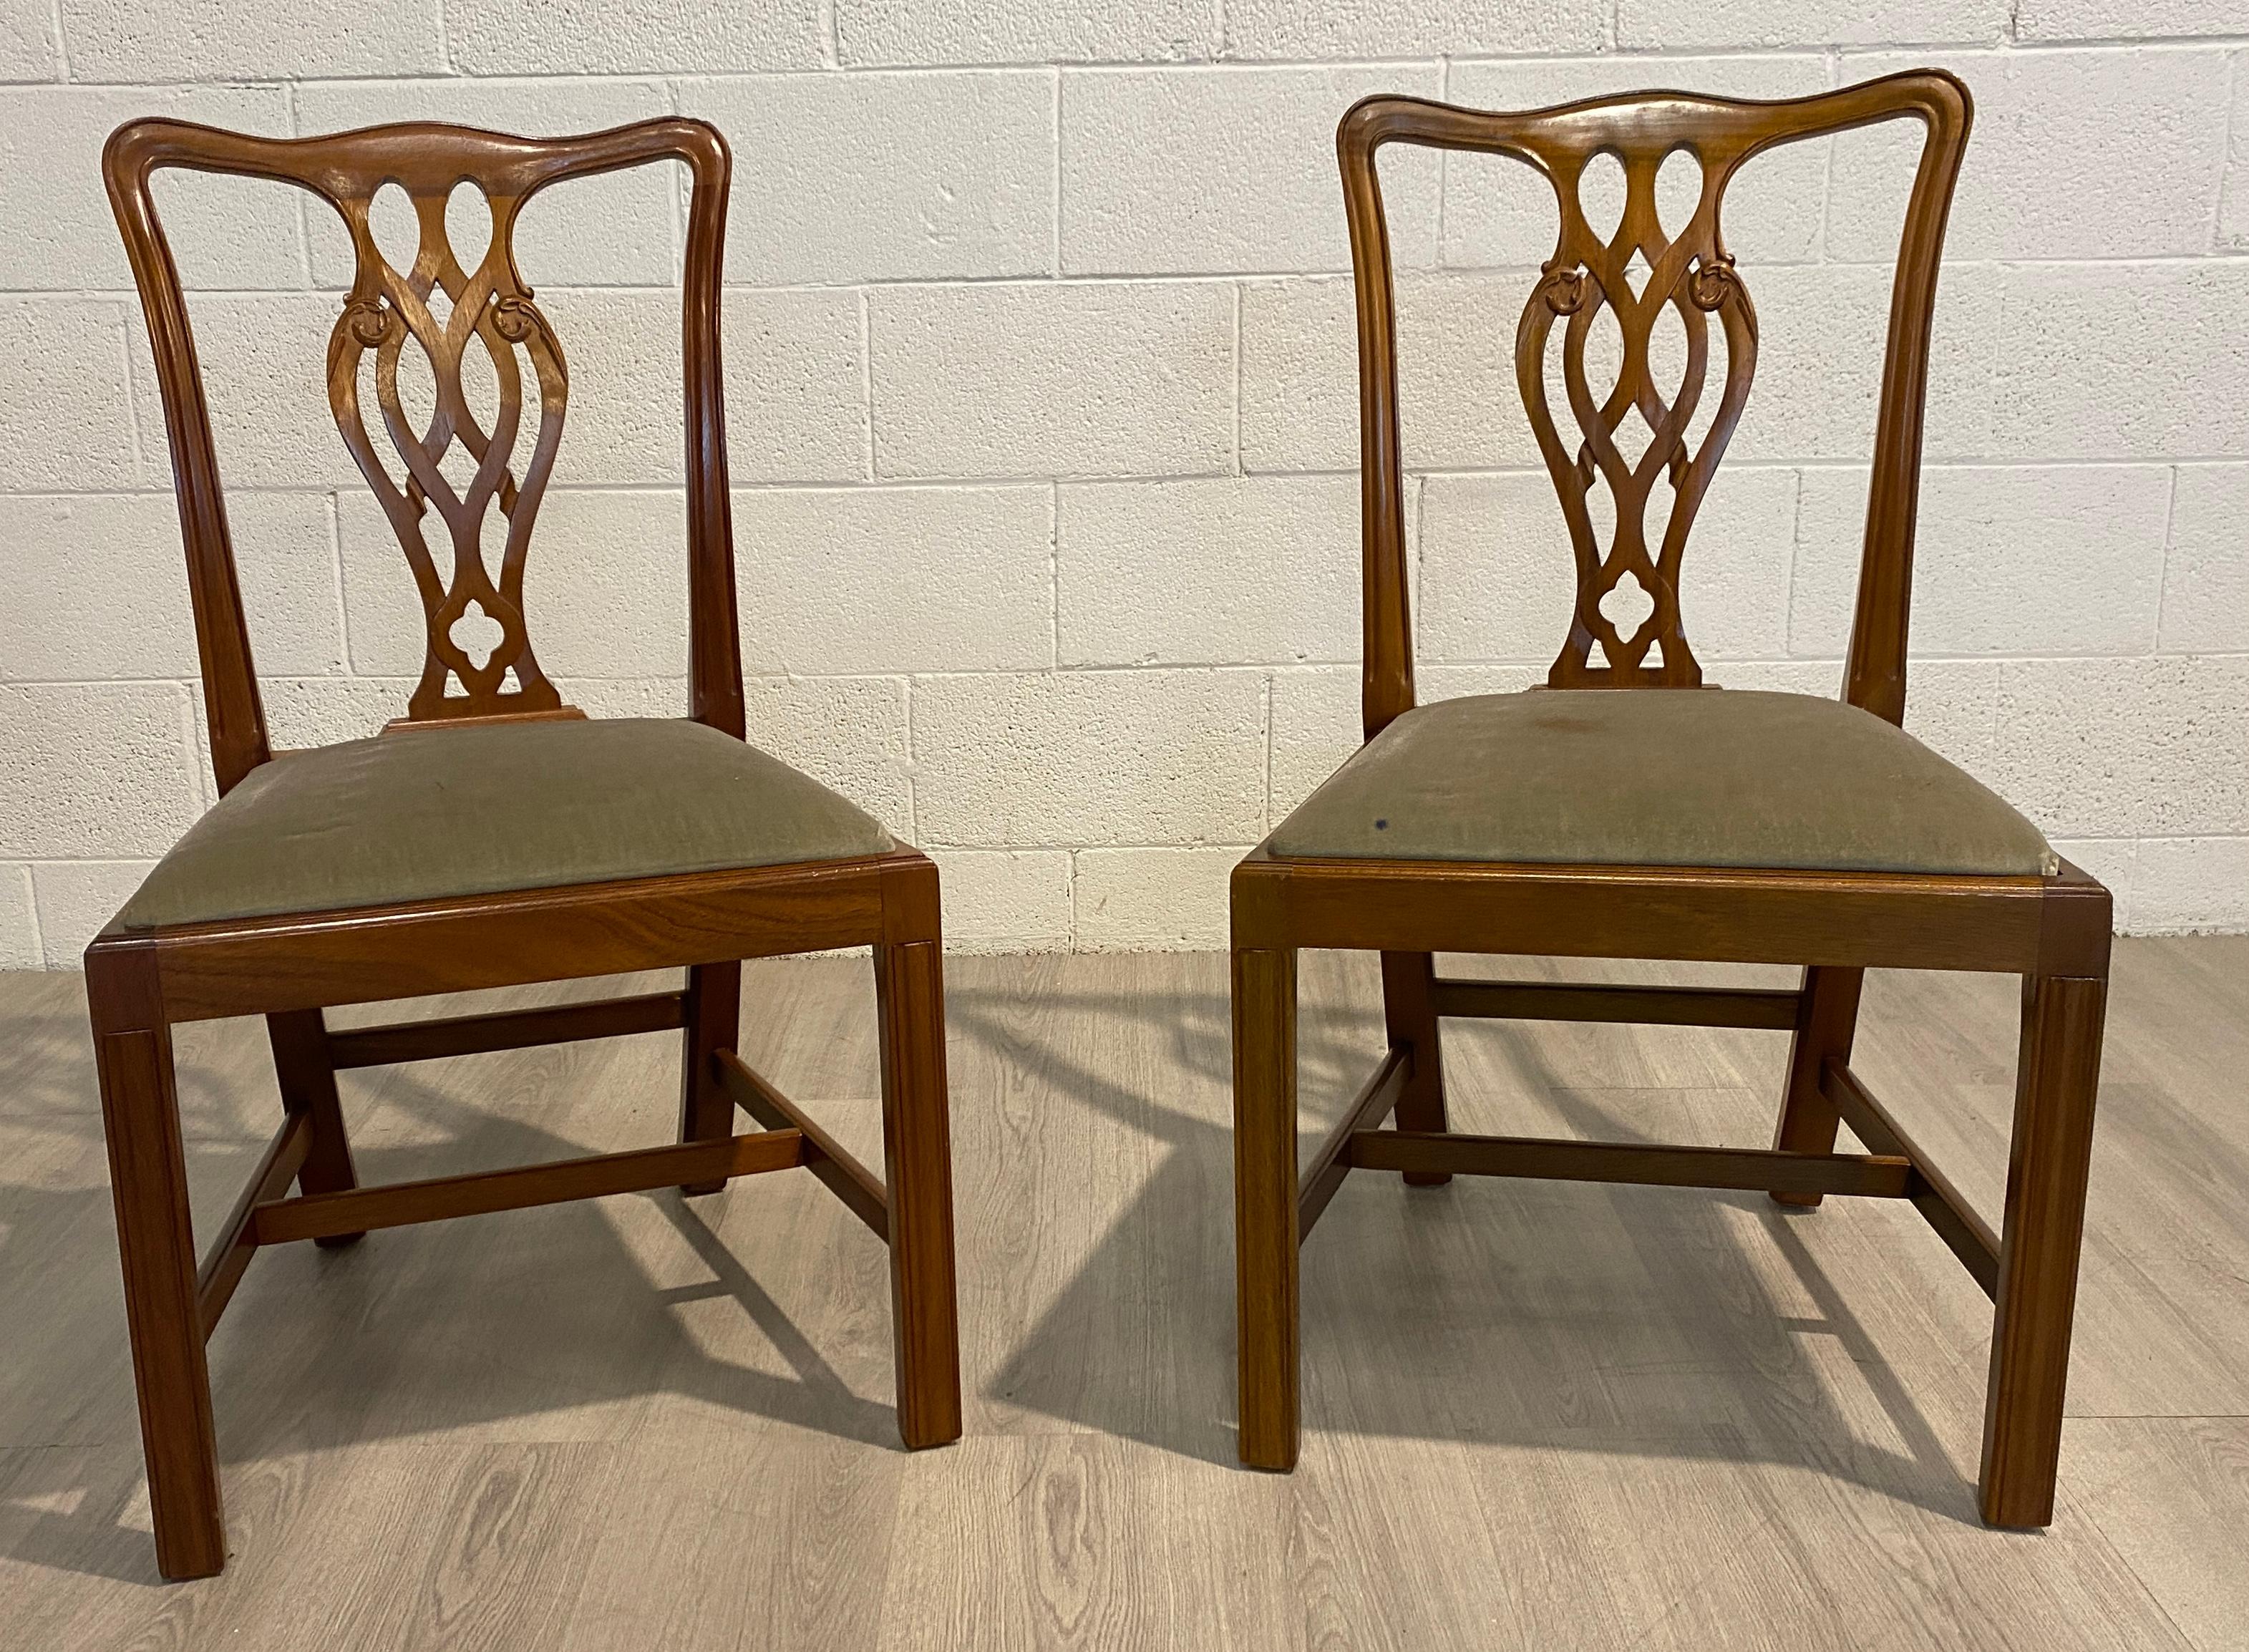 Ein solides Paar Mahagoni-Esszimmerstühle im georgianischen Stil, hergestellt in England. Die Stühle im Chippendale-Stil sind ohne Armlehnen. Gepolstert in ihrem ursprünglichen mintgrünen Bezug mit den herausklappbaren Sitzen können sie leicht